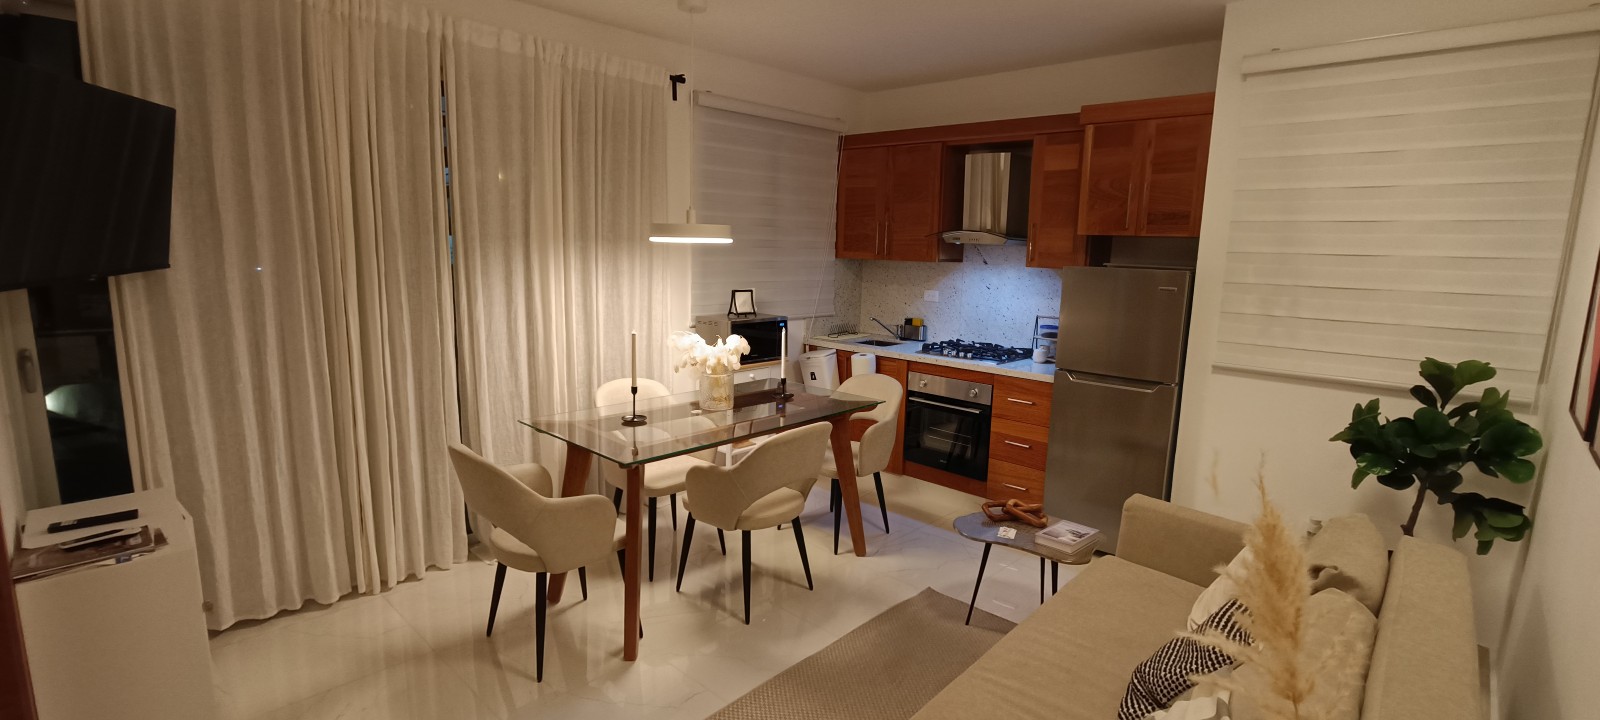 apartamentos - Rento apartamento estudio amueblado 5 estrella en la rinconada con jacuzzi y GYM 0